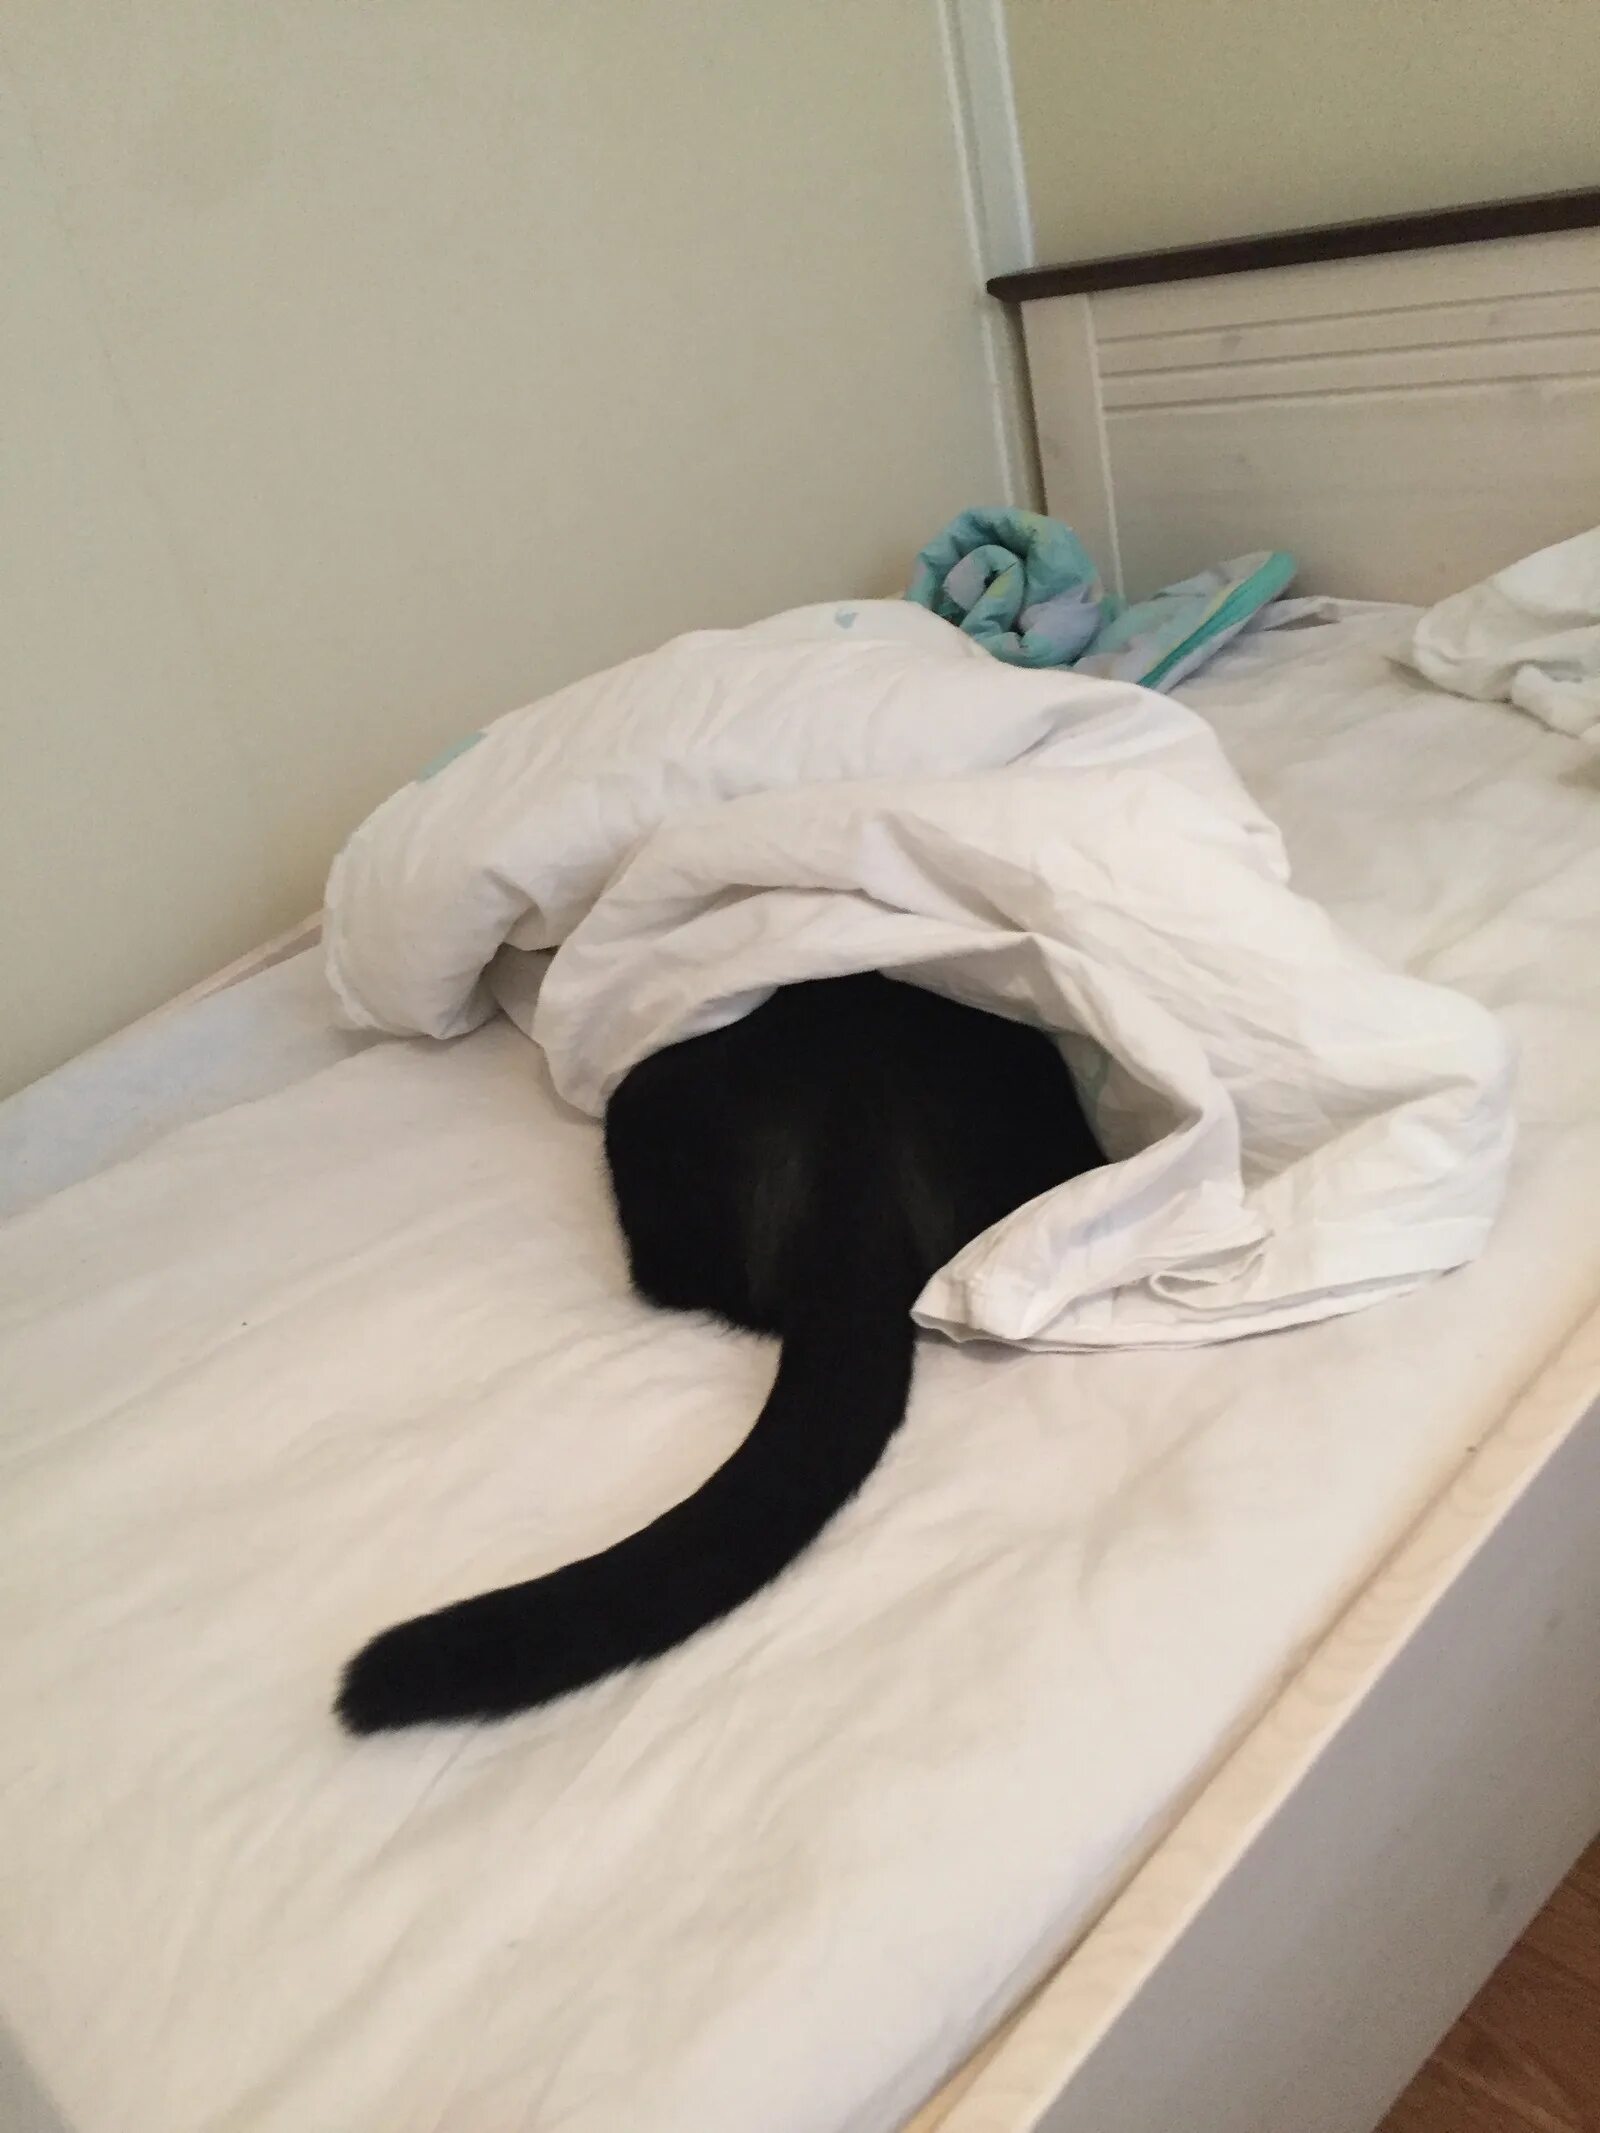 Котик прячется. Кот спрятался. Кот прячется под одеяло. Котик прячется под одеялом.